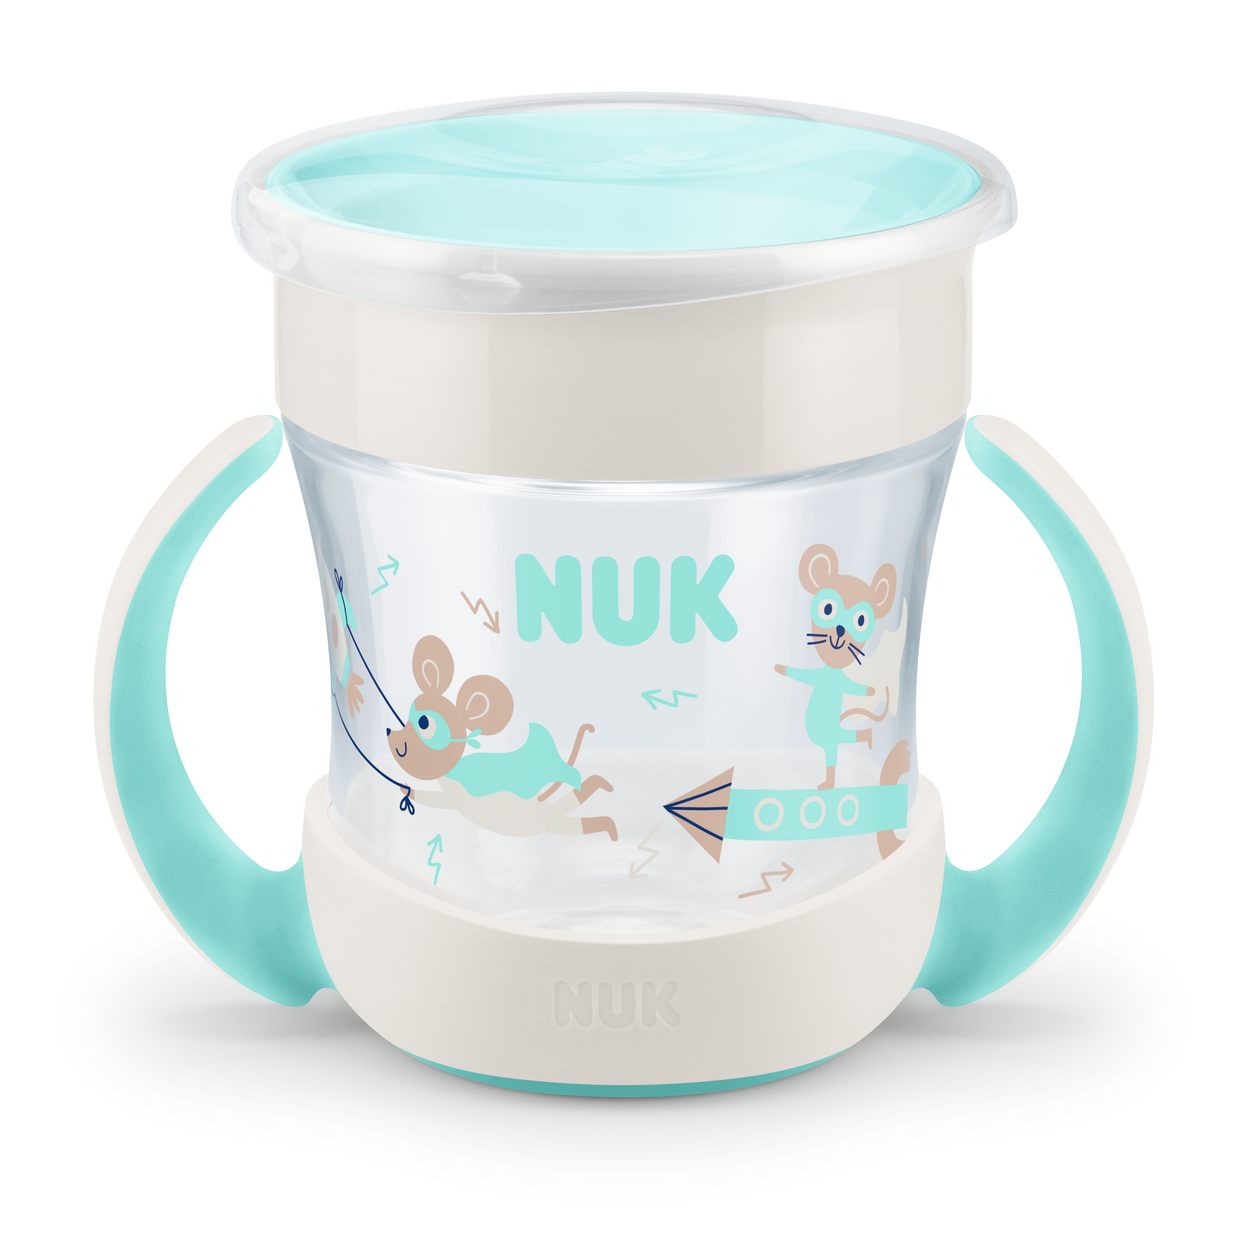 NUK EVOLUTION mini Magic Cup, 6+ months, 160 ml. Neutral